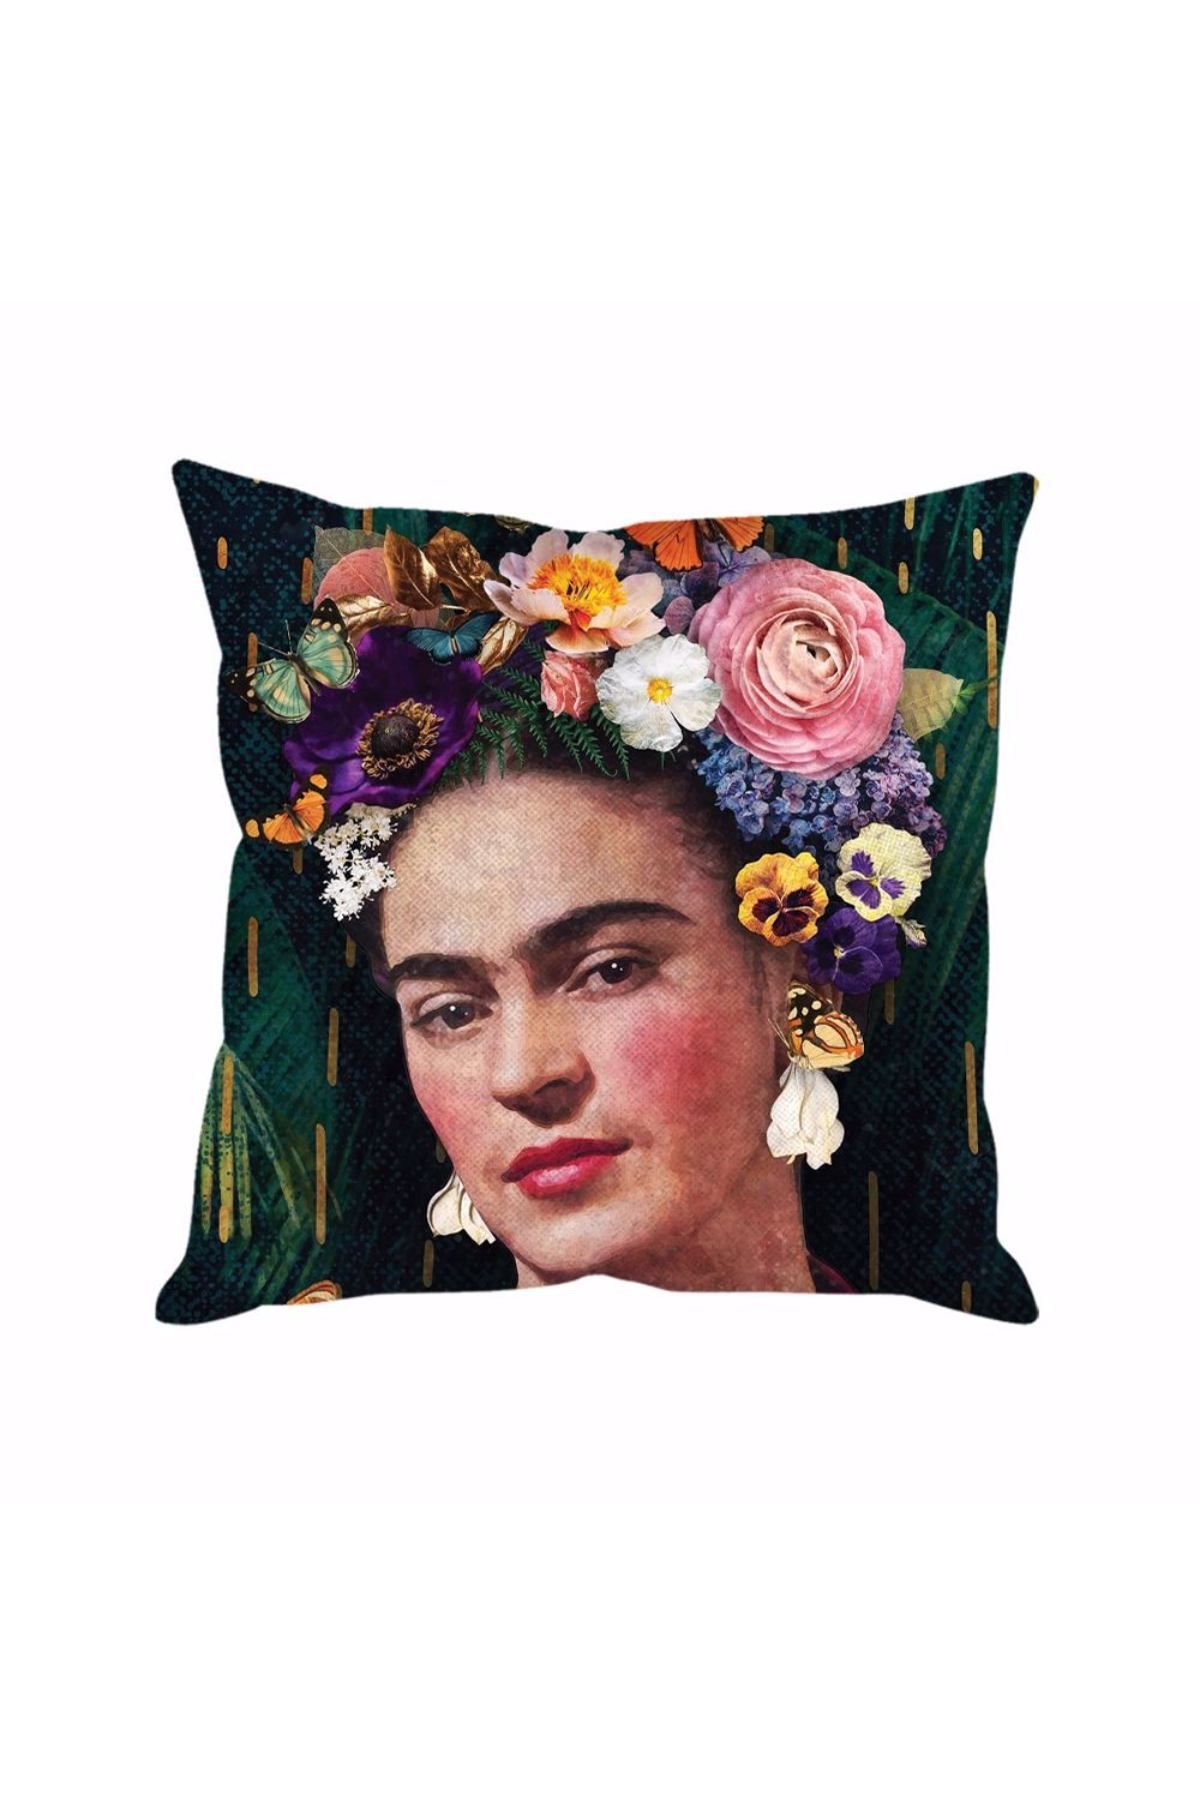 Boho Frida Kahlo Cushion Cover